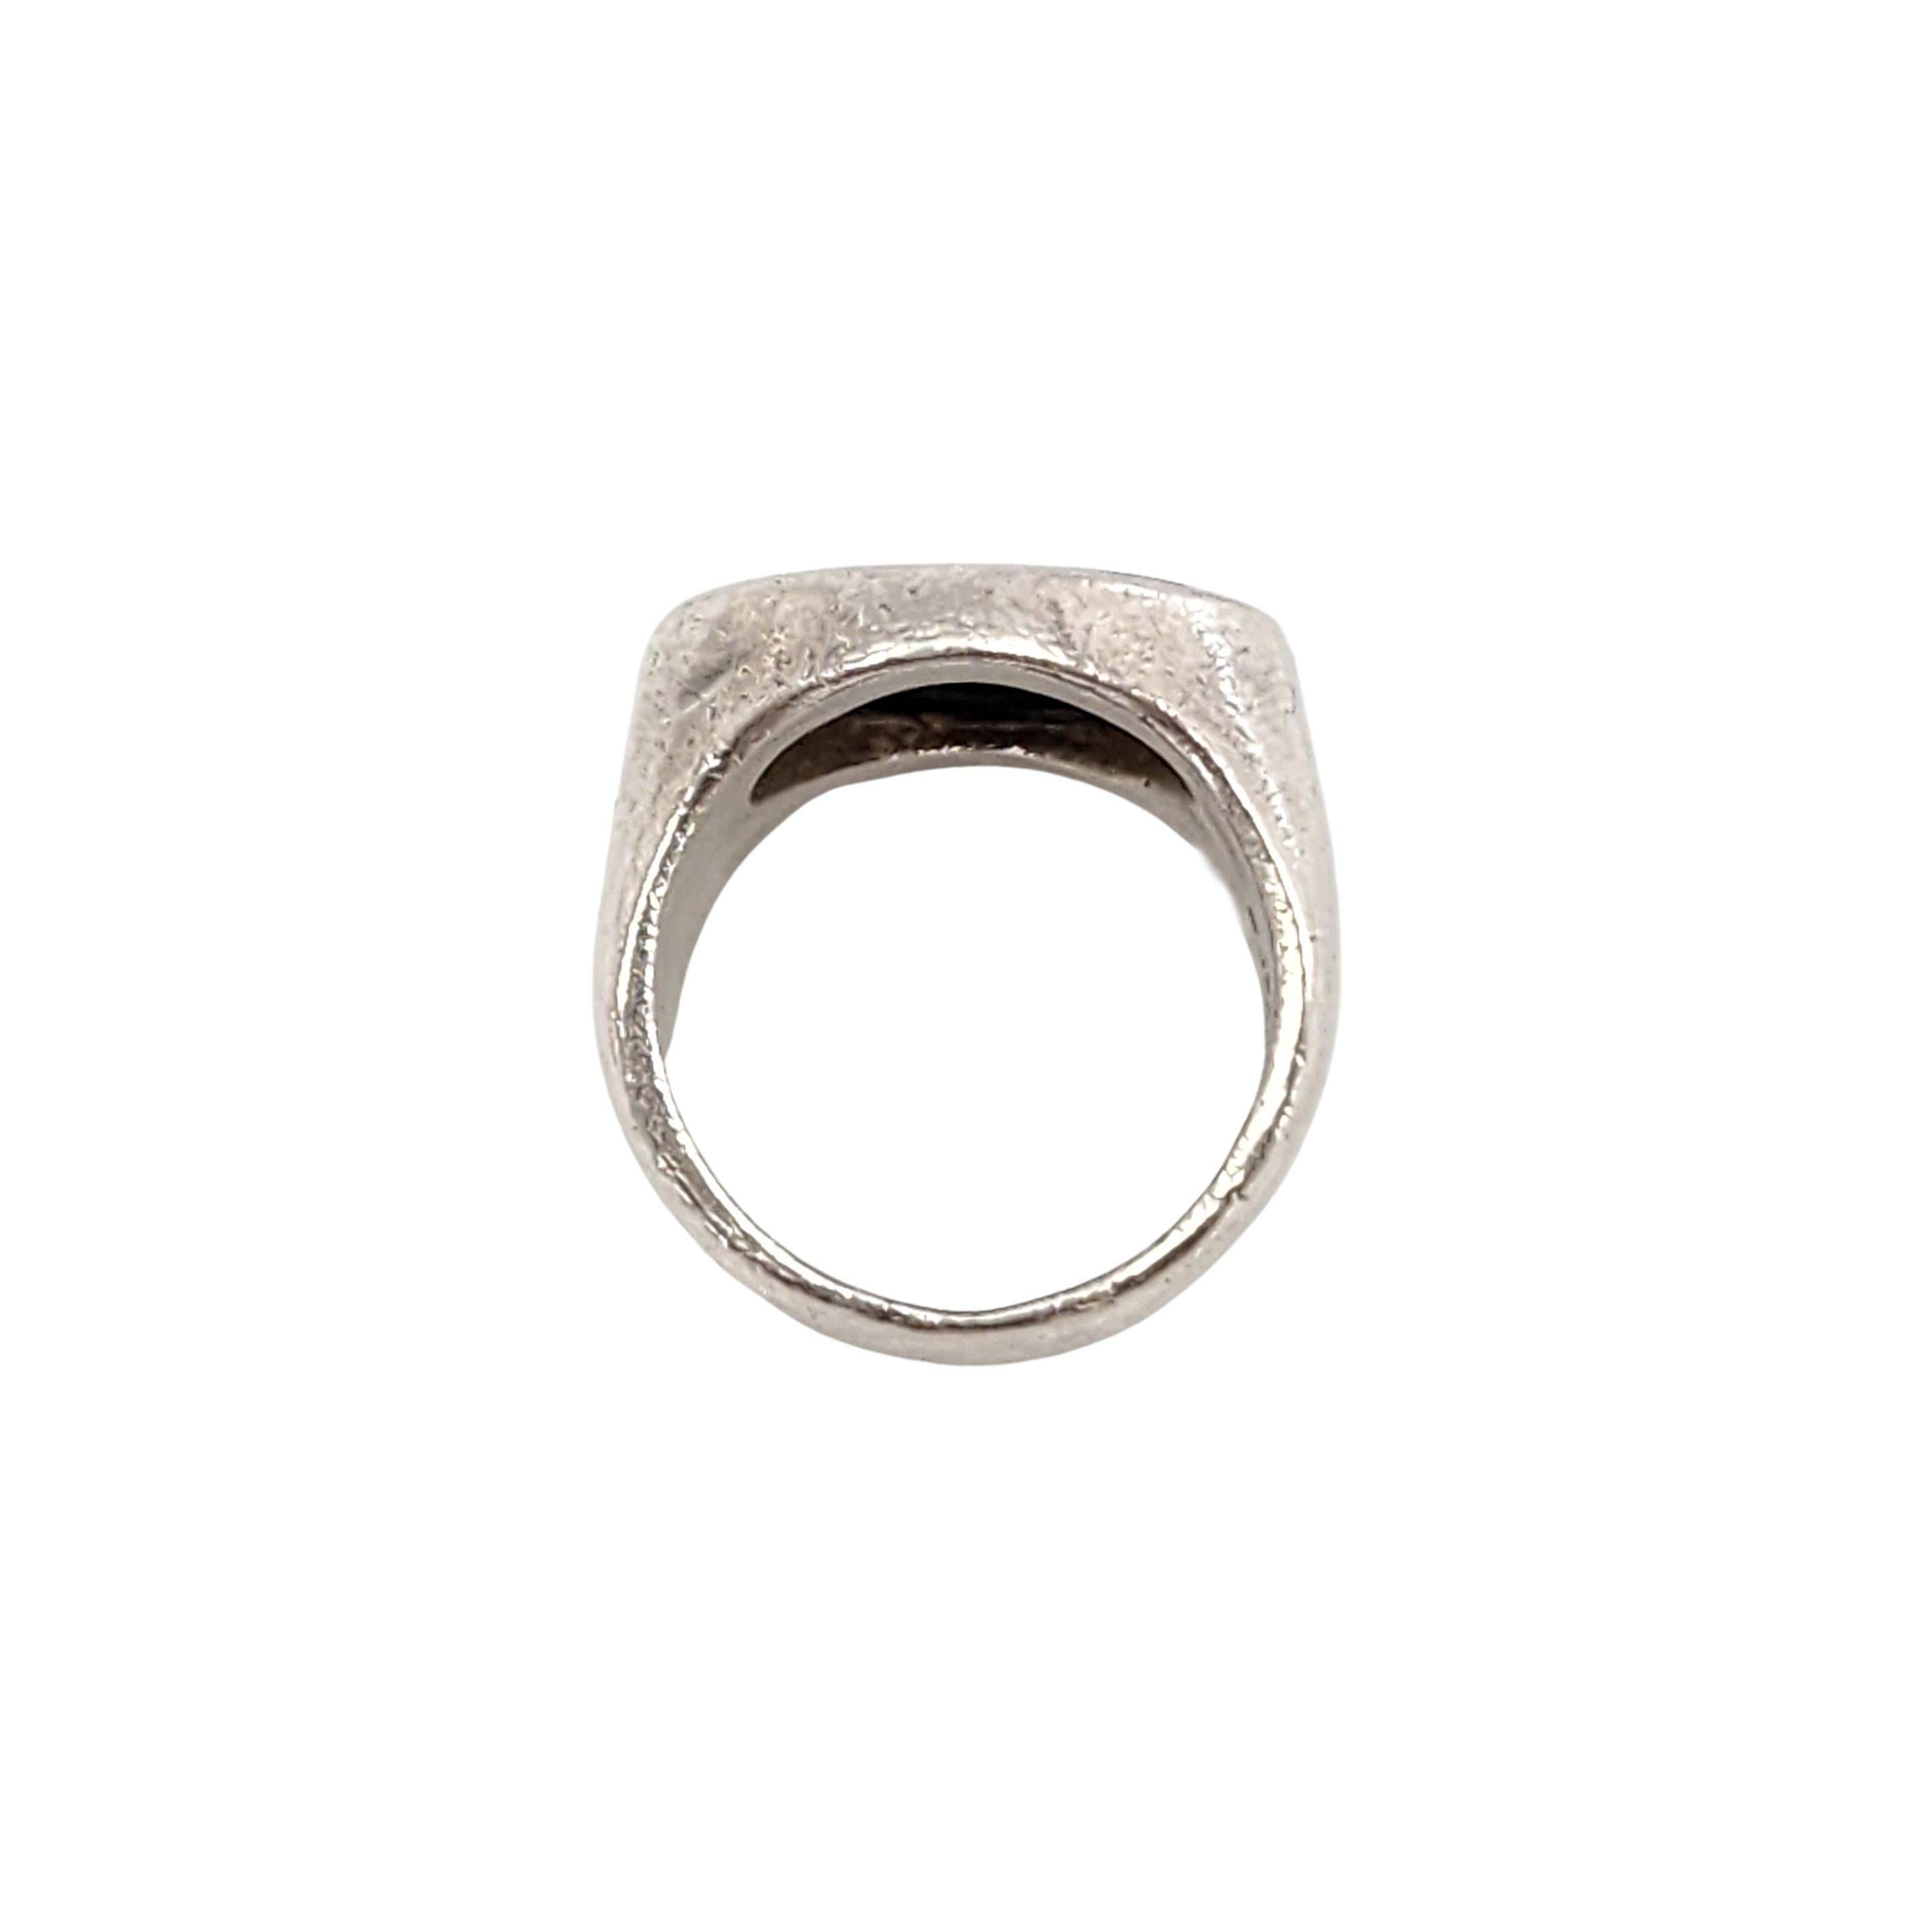 Lisa Jenks Sterling Silber Onyx Bullseye Ring, Größe 5 1/2 #14179 Damen